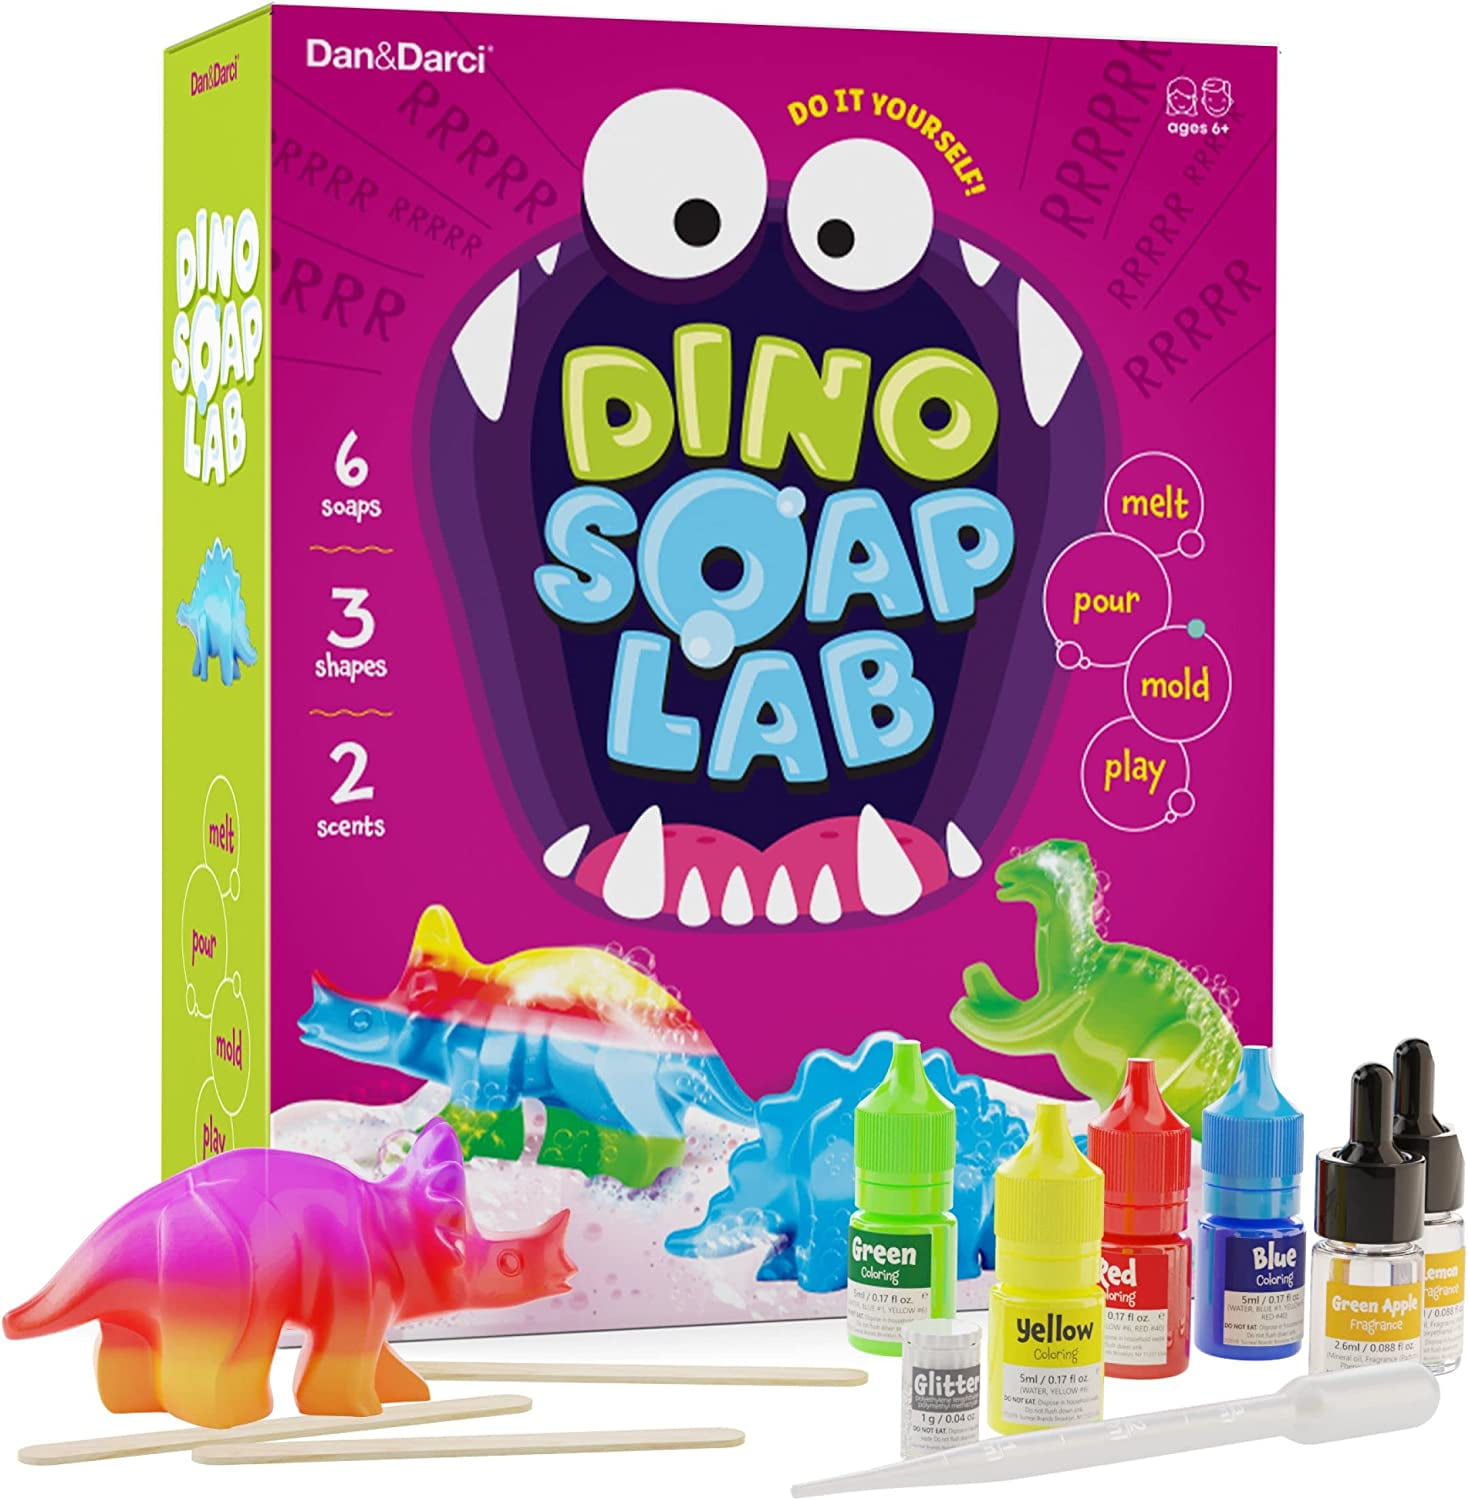 Dino Soap Making Kit for Kids — Dan&Darci